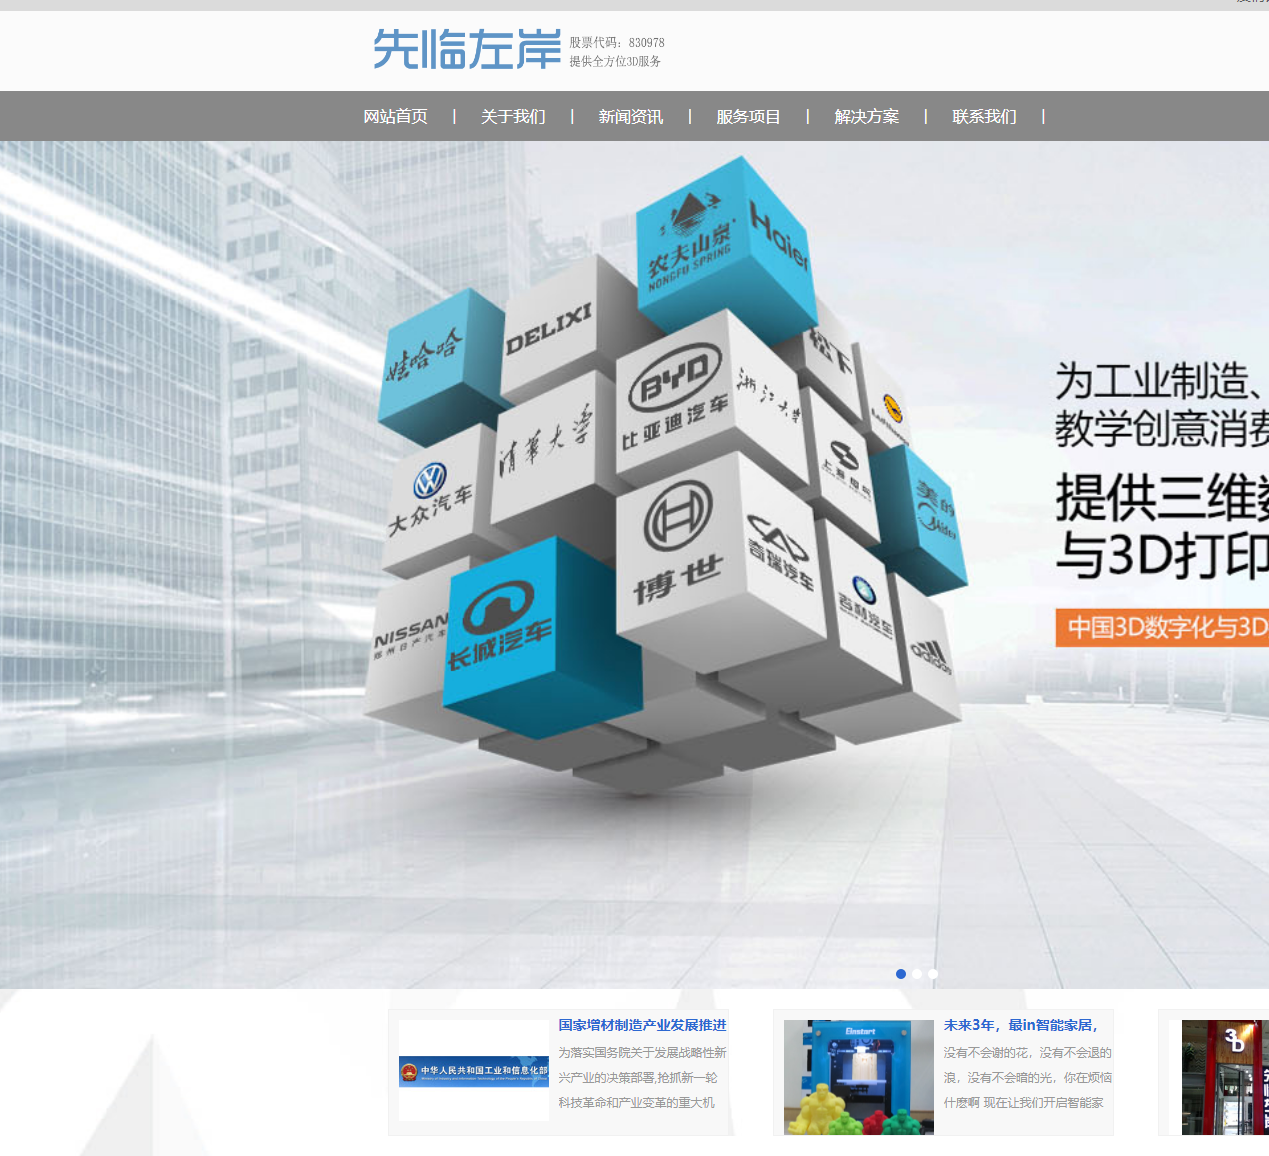 高科技术3D打印设备企业官网html整站下载